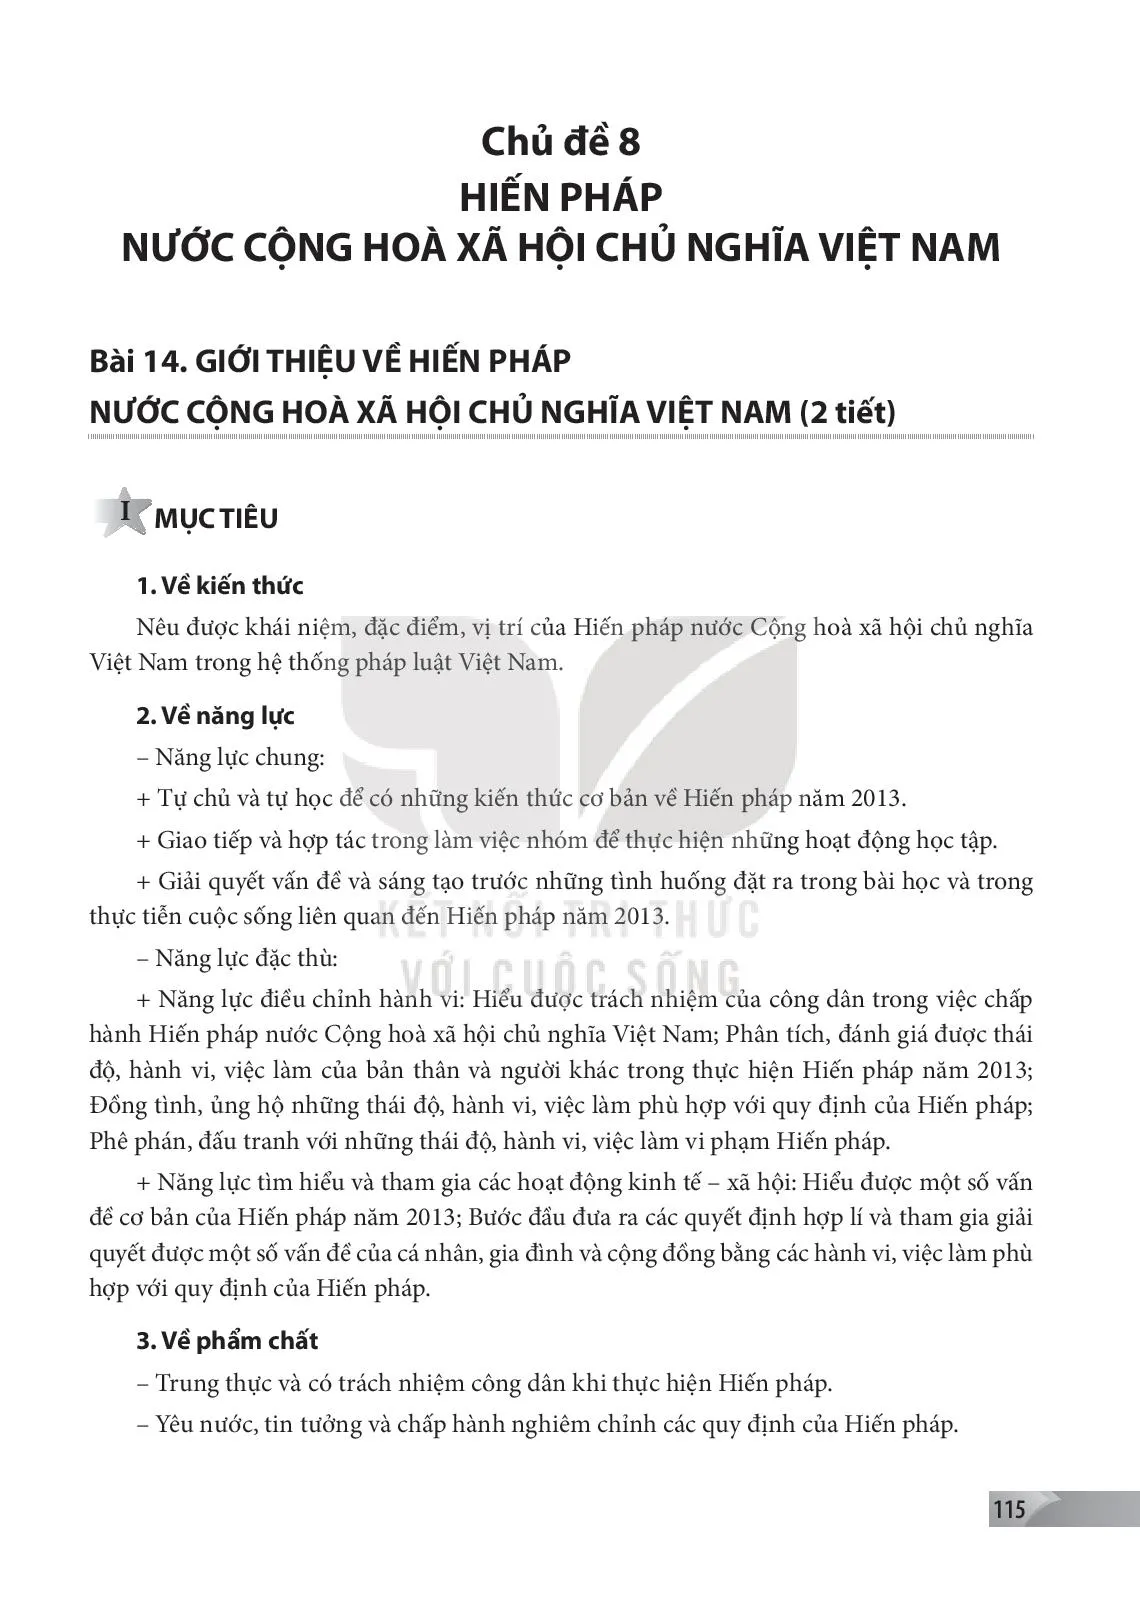 Bài 14: Giới thiệu về Hiến pháp nước Cộng hoà xã hội chủ nghĩa Việt Nam 